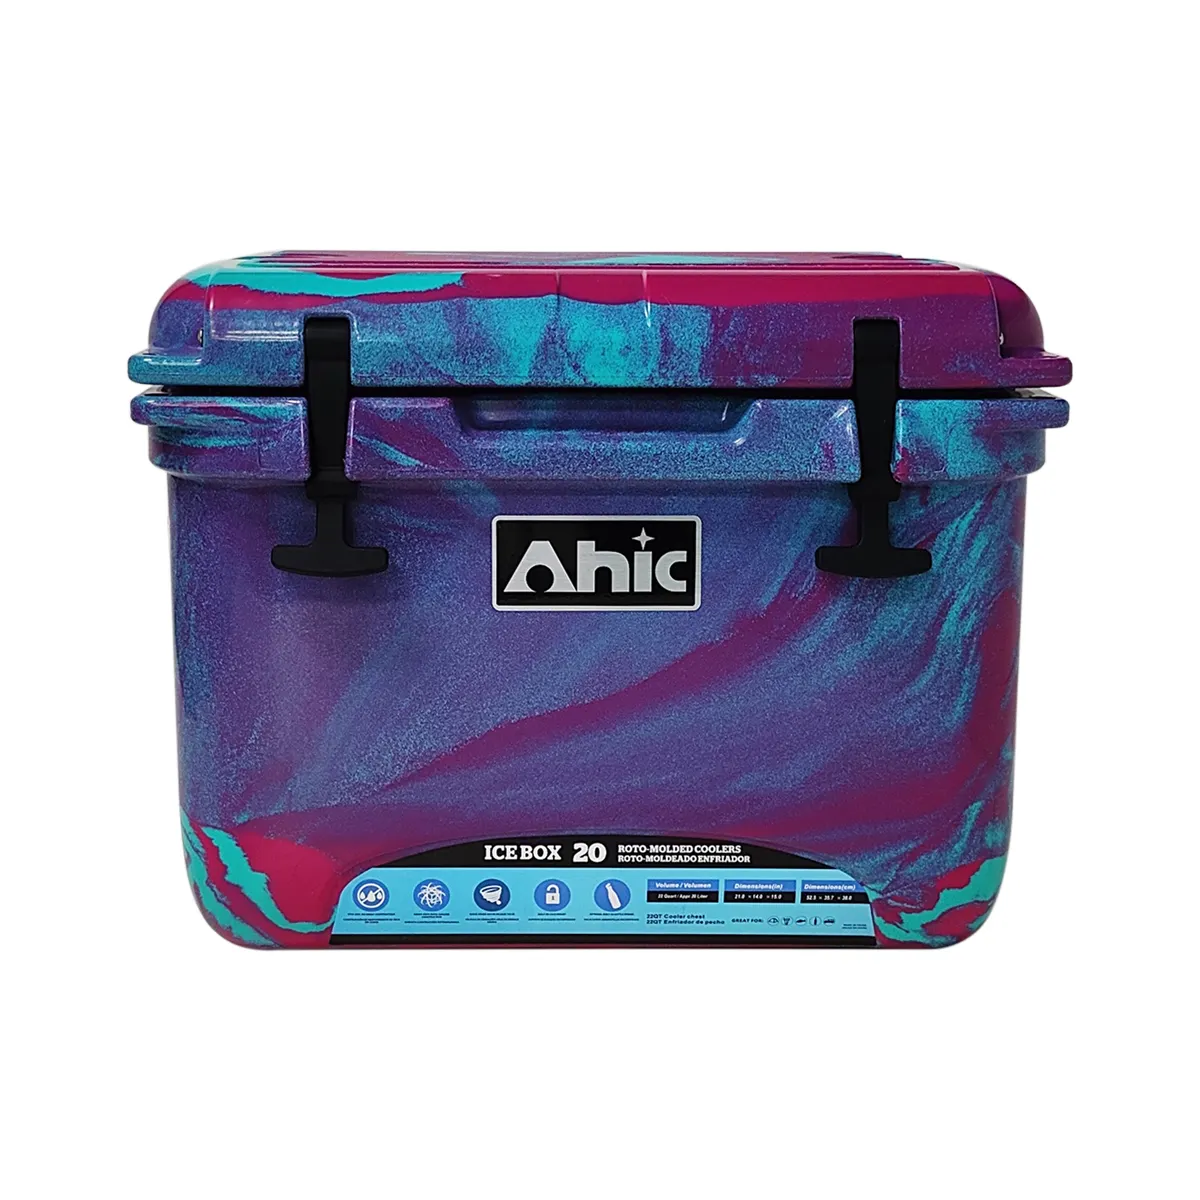 Enfriador de hielo RH20, caja enfriadora portátil de plástico, mejor que los refrigeradores de acero inoxidable, 20L con mango ss304, color de camuflaje, bricolaje